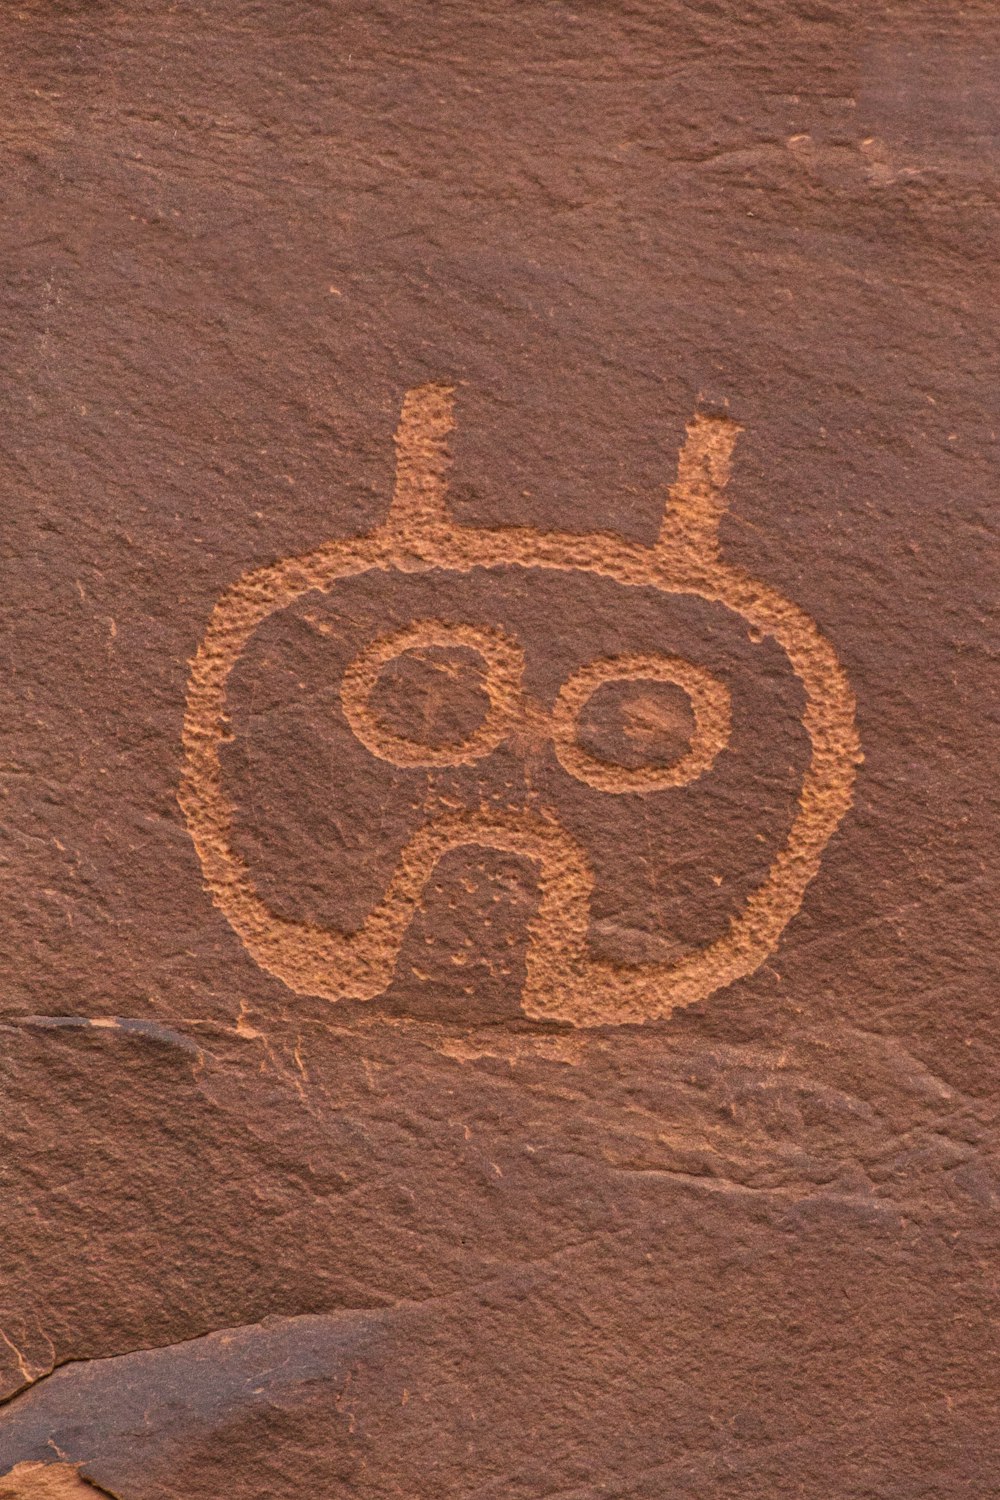 una roccia con il disegno di un volto su di esso